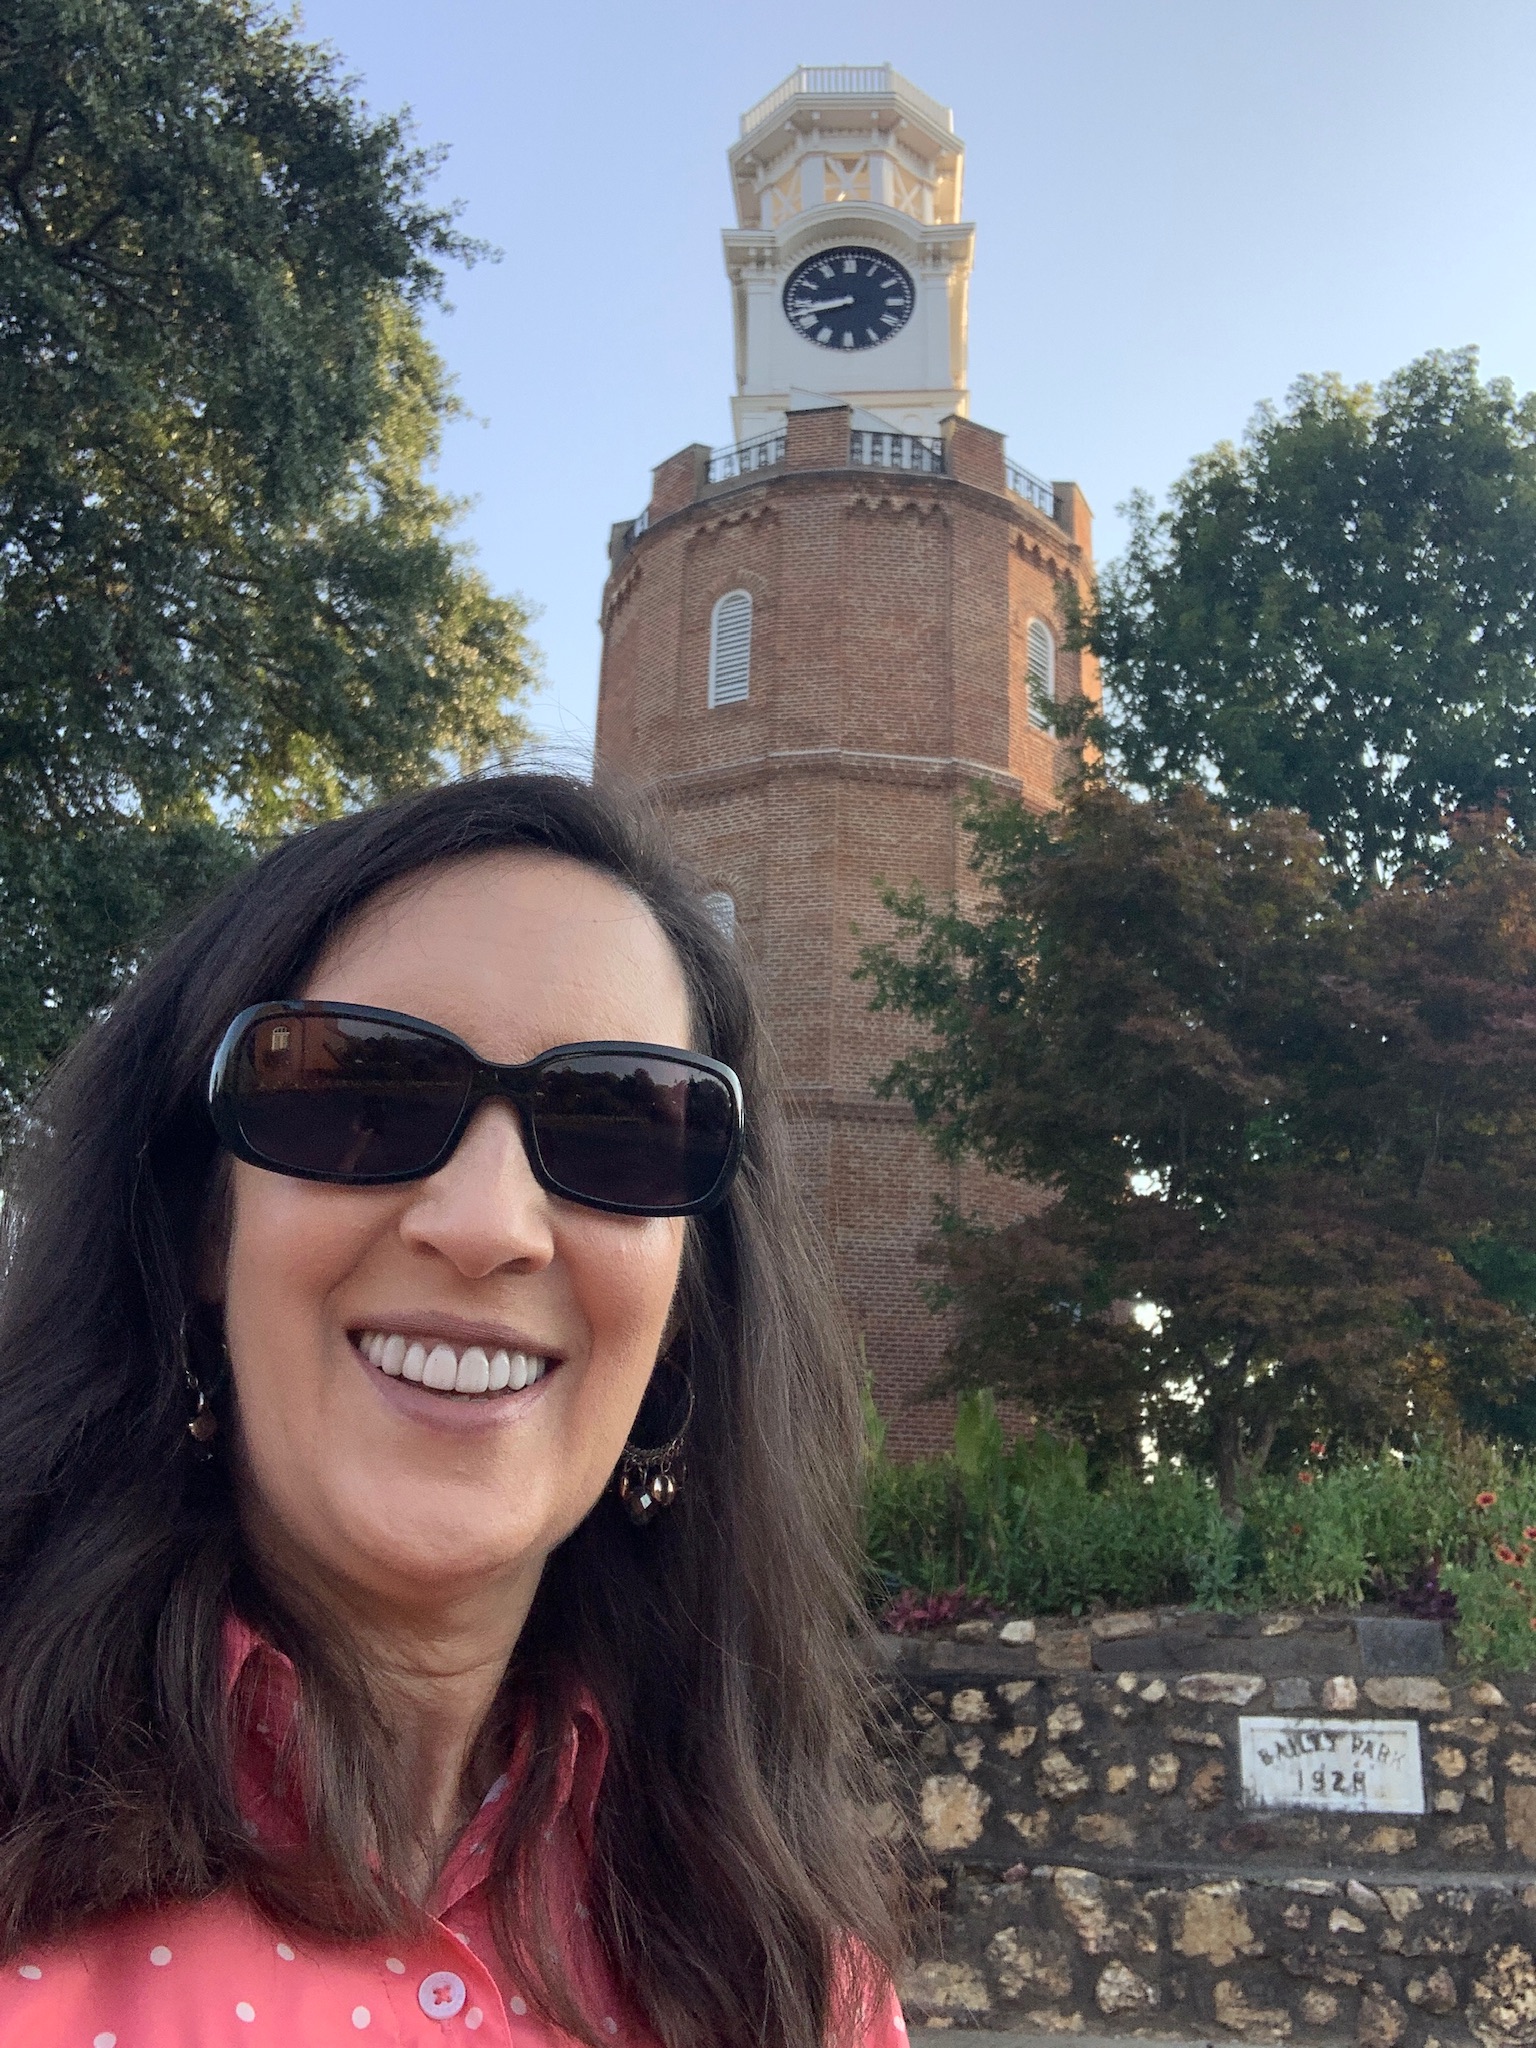 Selfie at the Rome GA Clock Tower